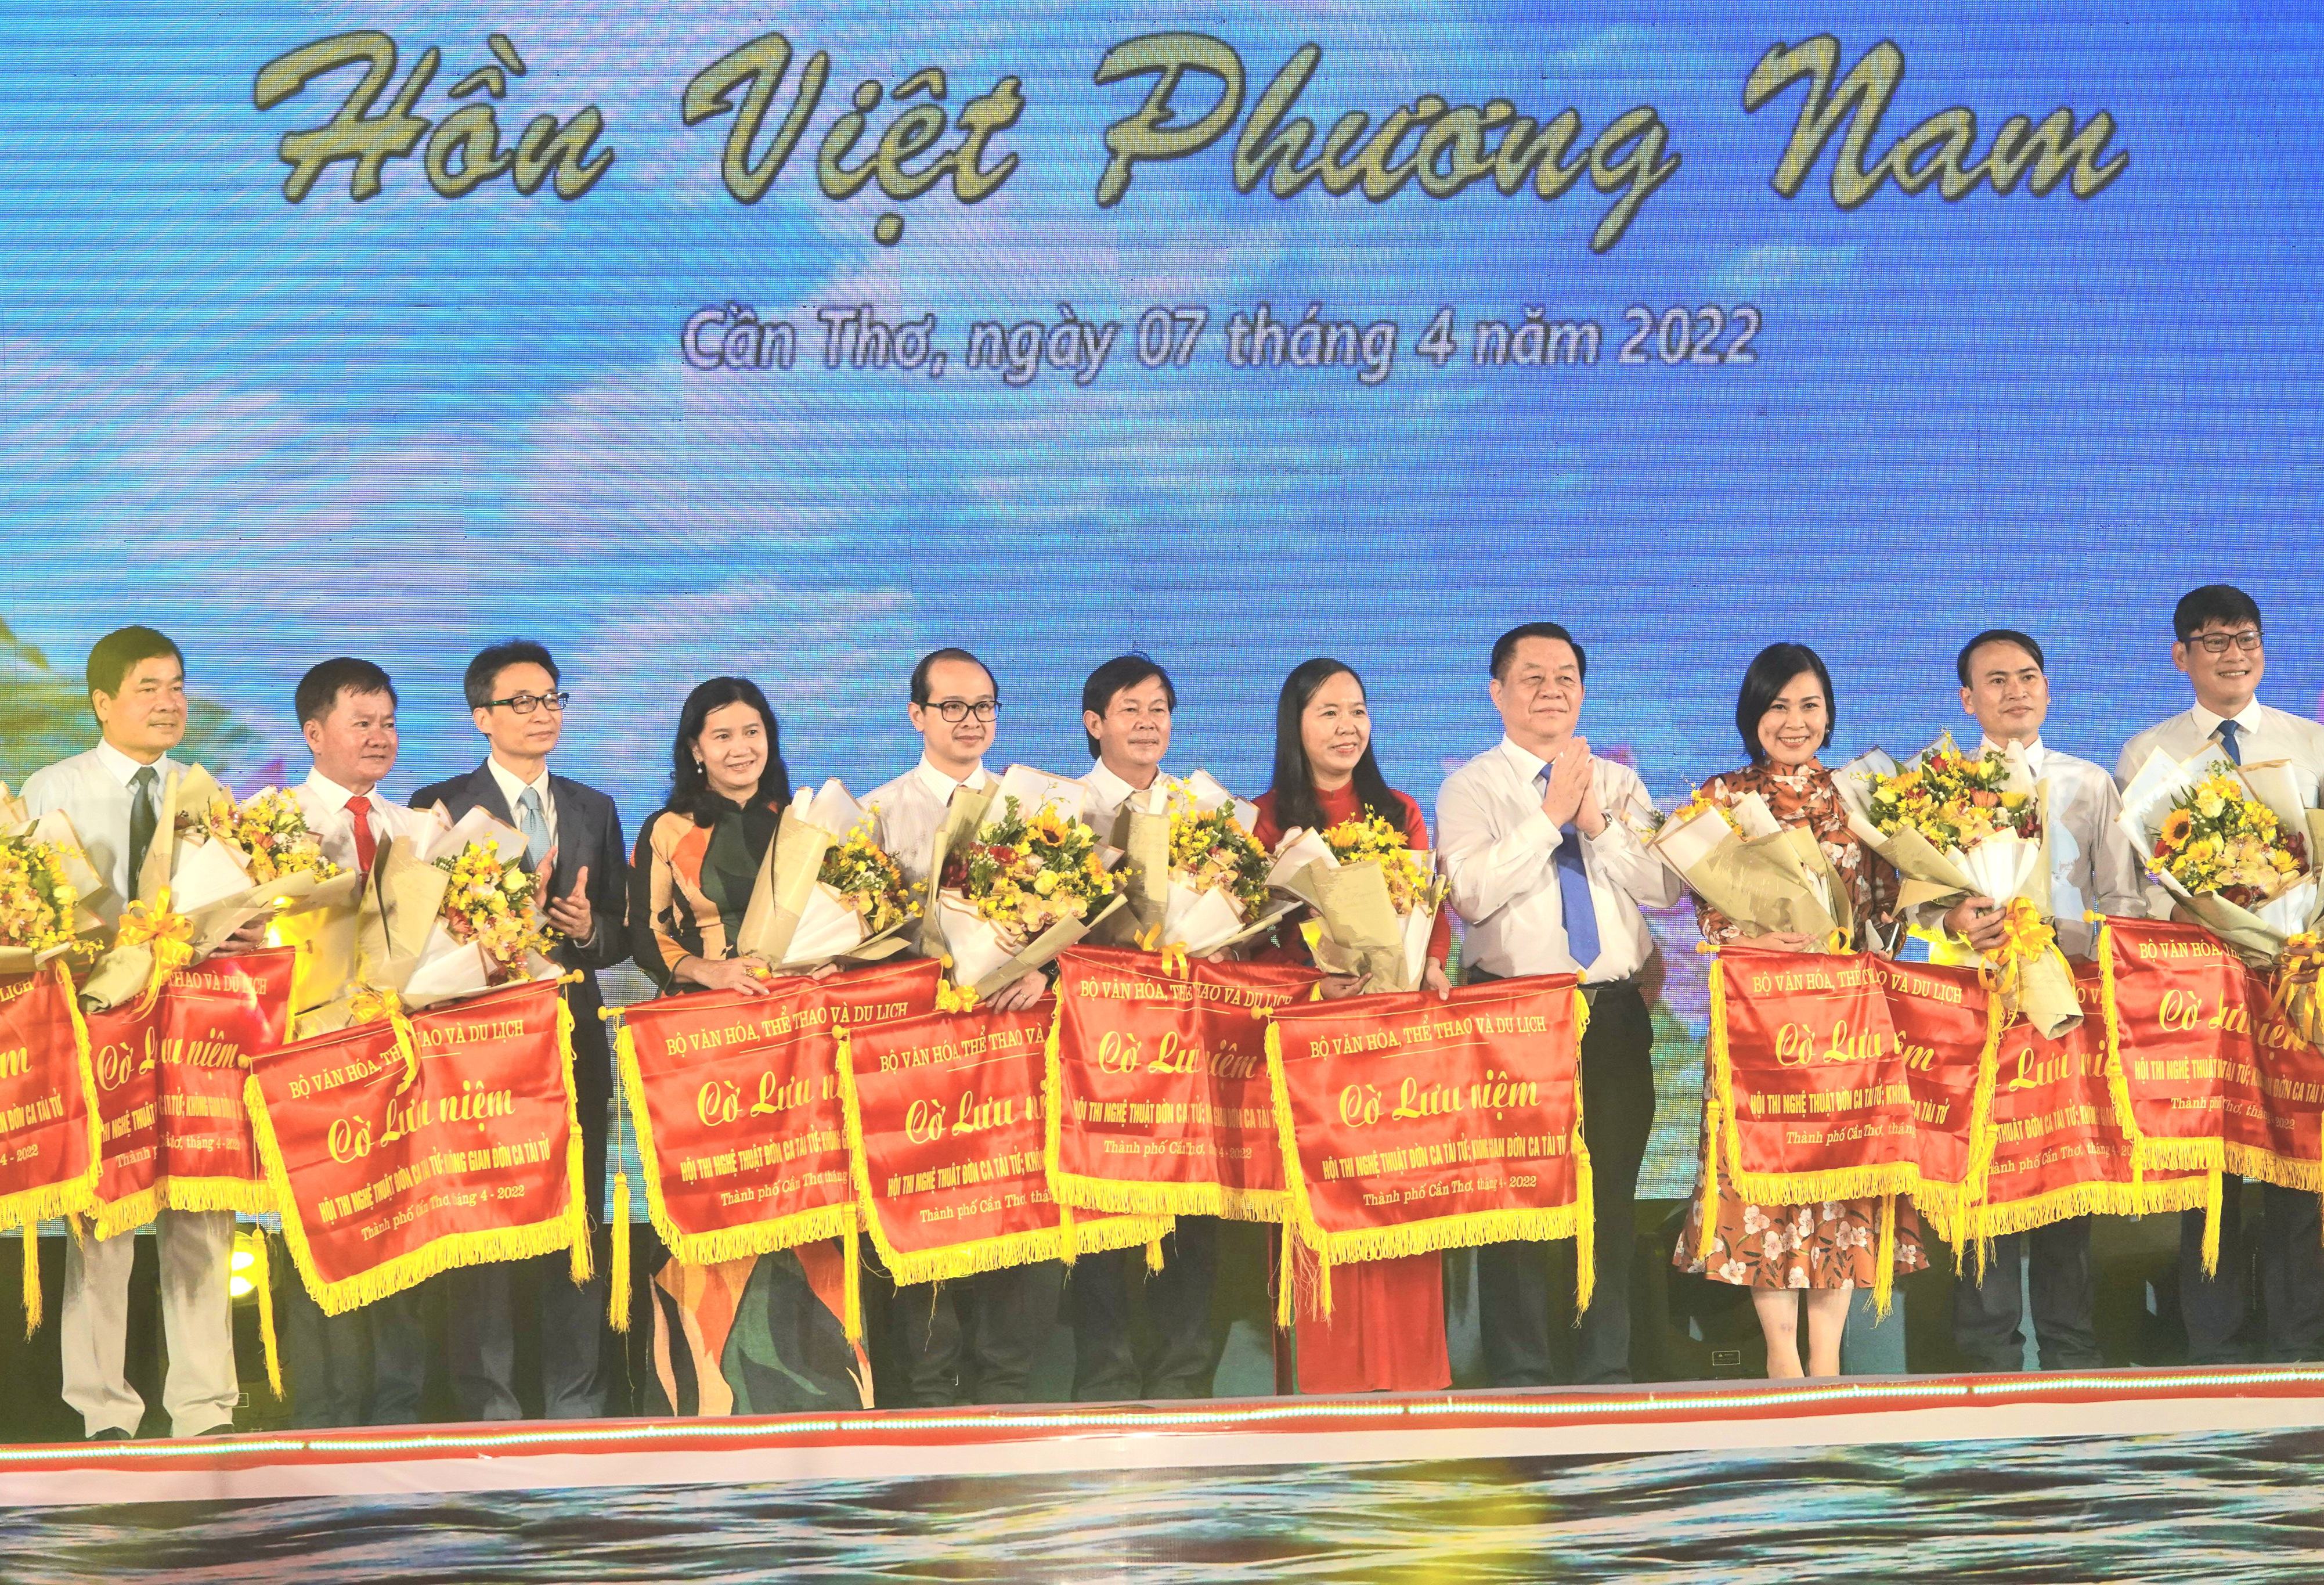 Ông Nguyễn Trọng Nghĩa, Trưởng Ban Tuyên giáo Trung ương và ông Vũ Đức Đam, Phó Thủ tướng Chính phủ, trao cờ lưu niệm cho các địa phương tham gia sự kiện.